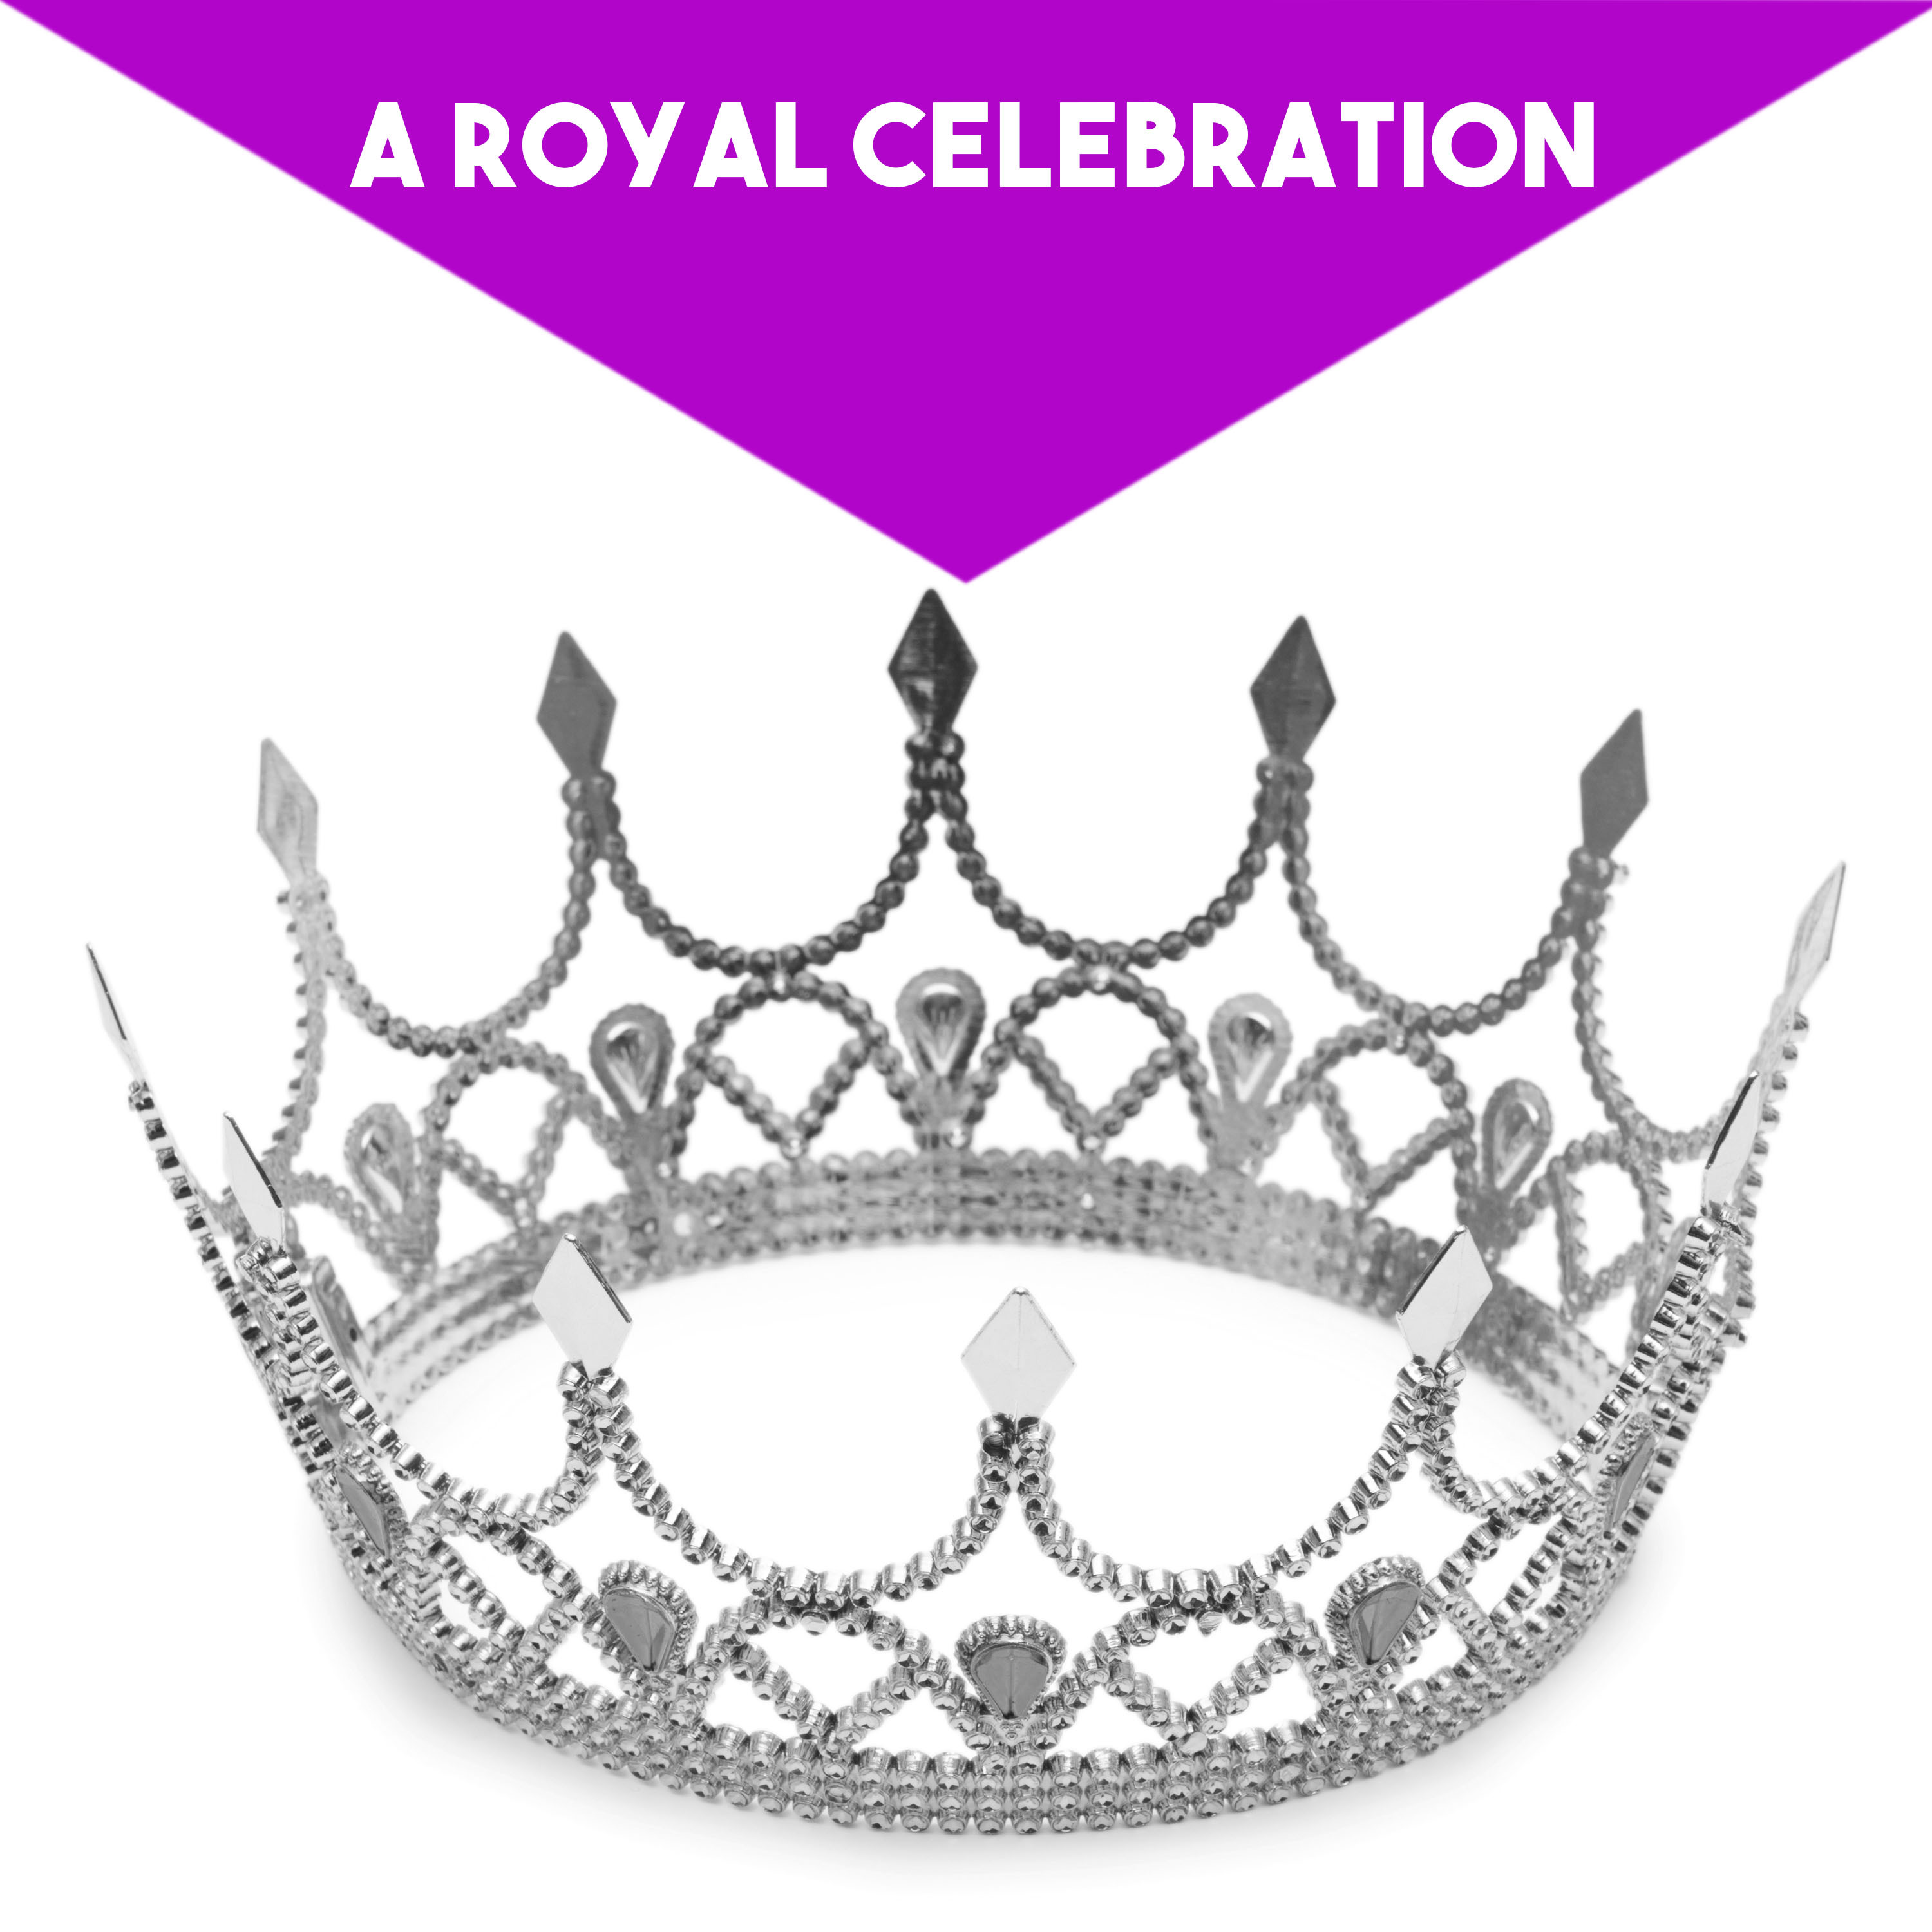 A Royal Celebration